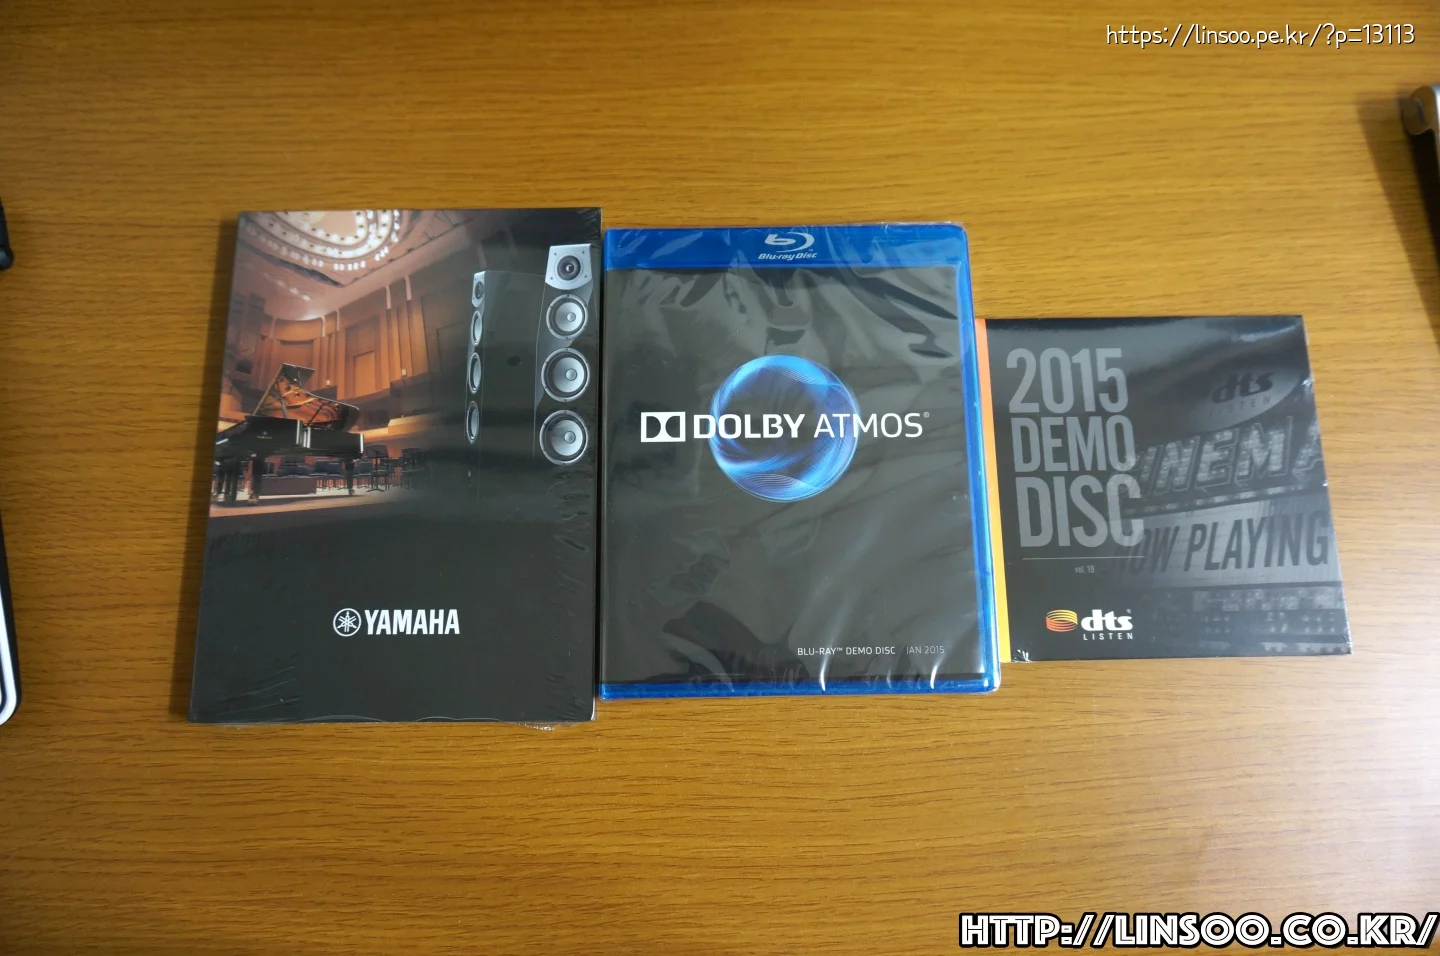 Yamaha, Dolby Atmos, DTS